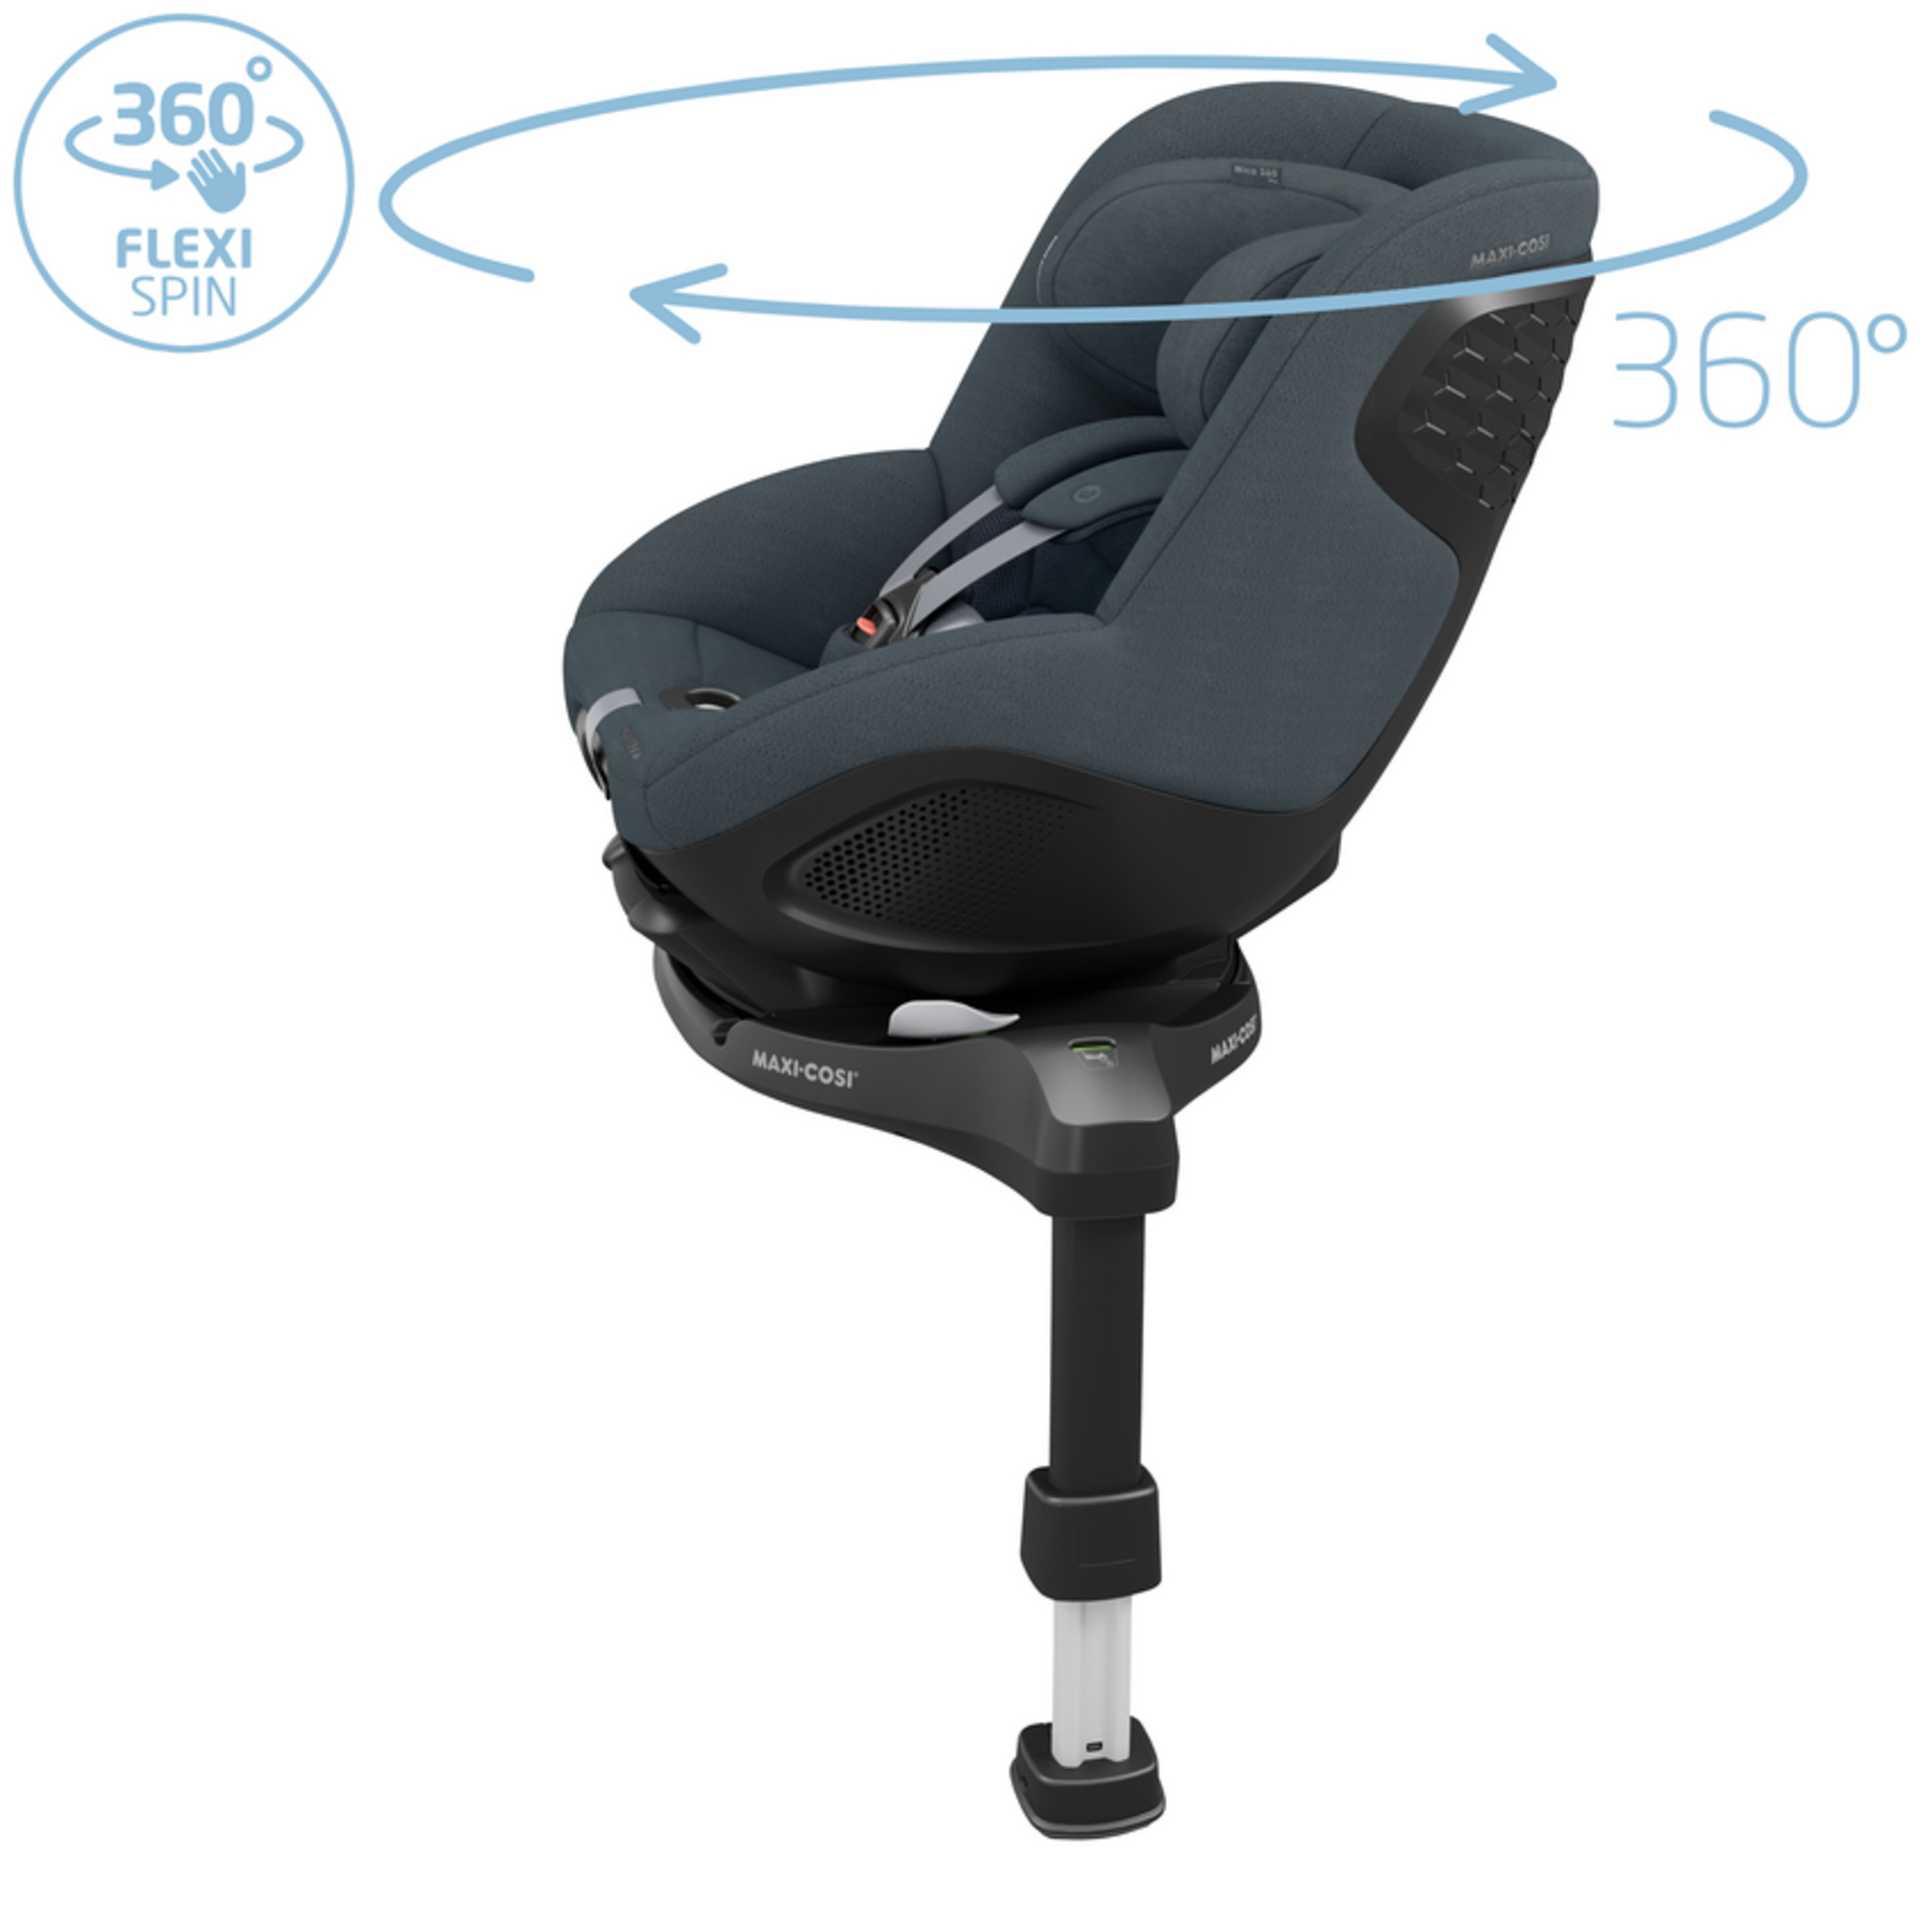 Maxi-cosi mica 360 pro graphite - seggiolino auto per neonato/bimbo piccolo - nascita 4 anni - MAXI COSI